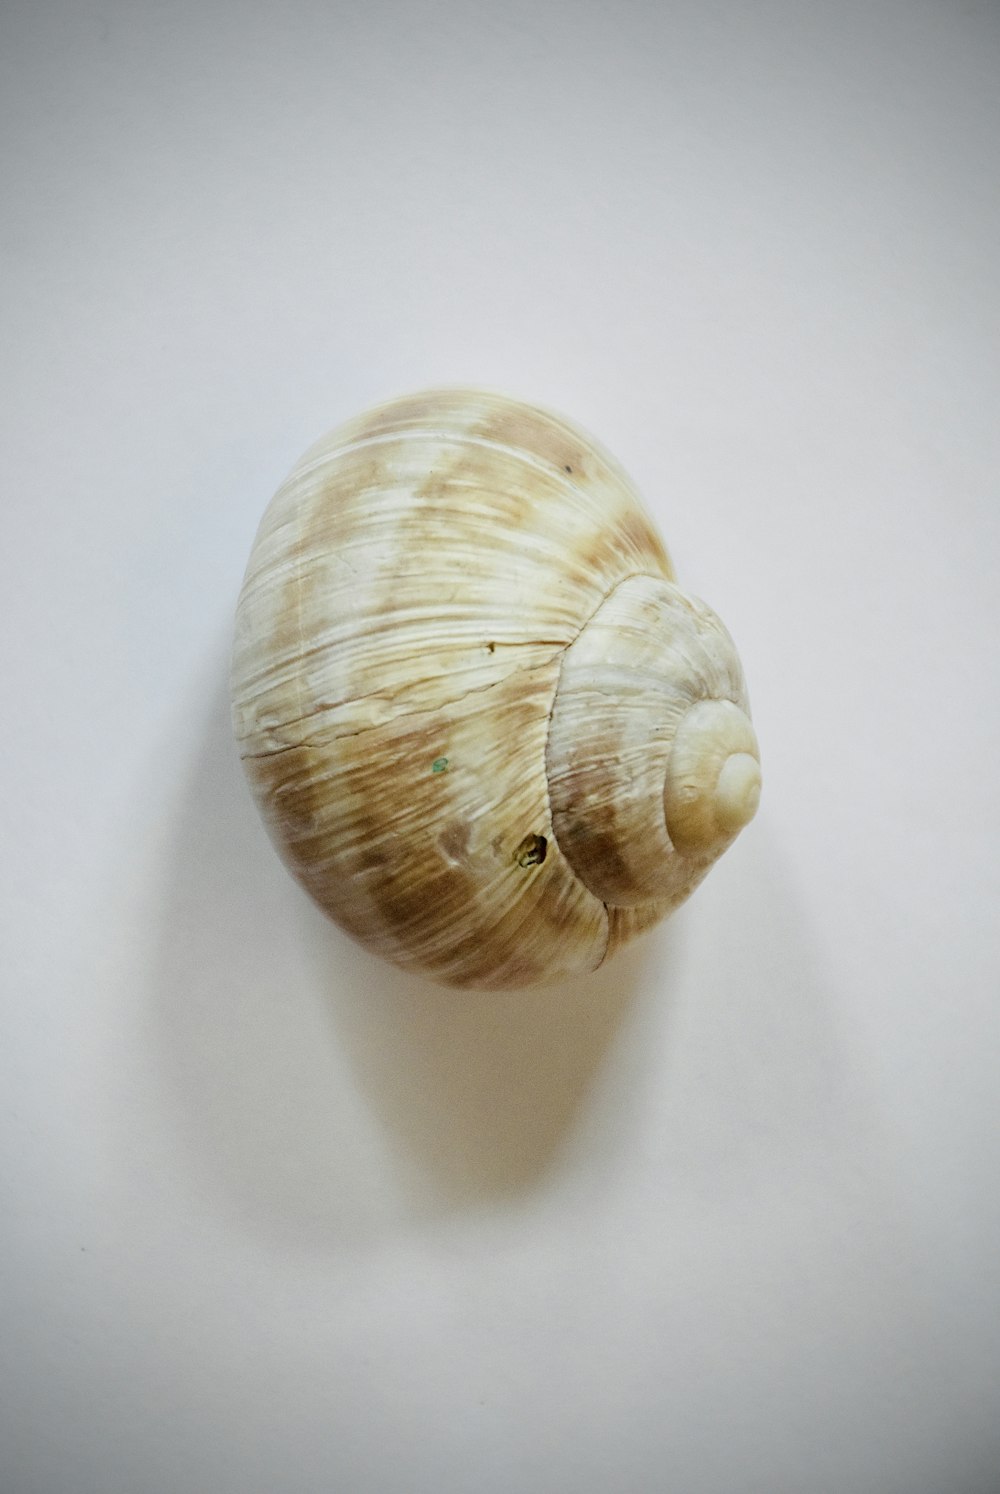 brown and white seashell on white textile